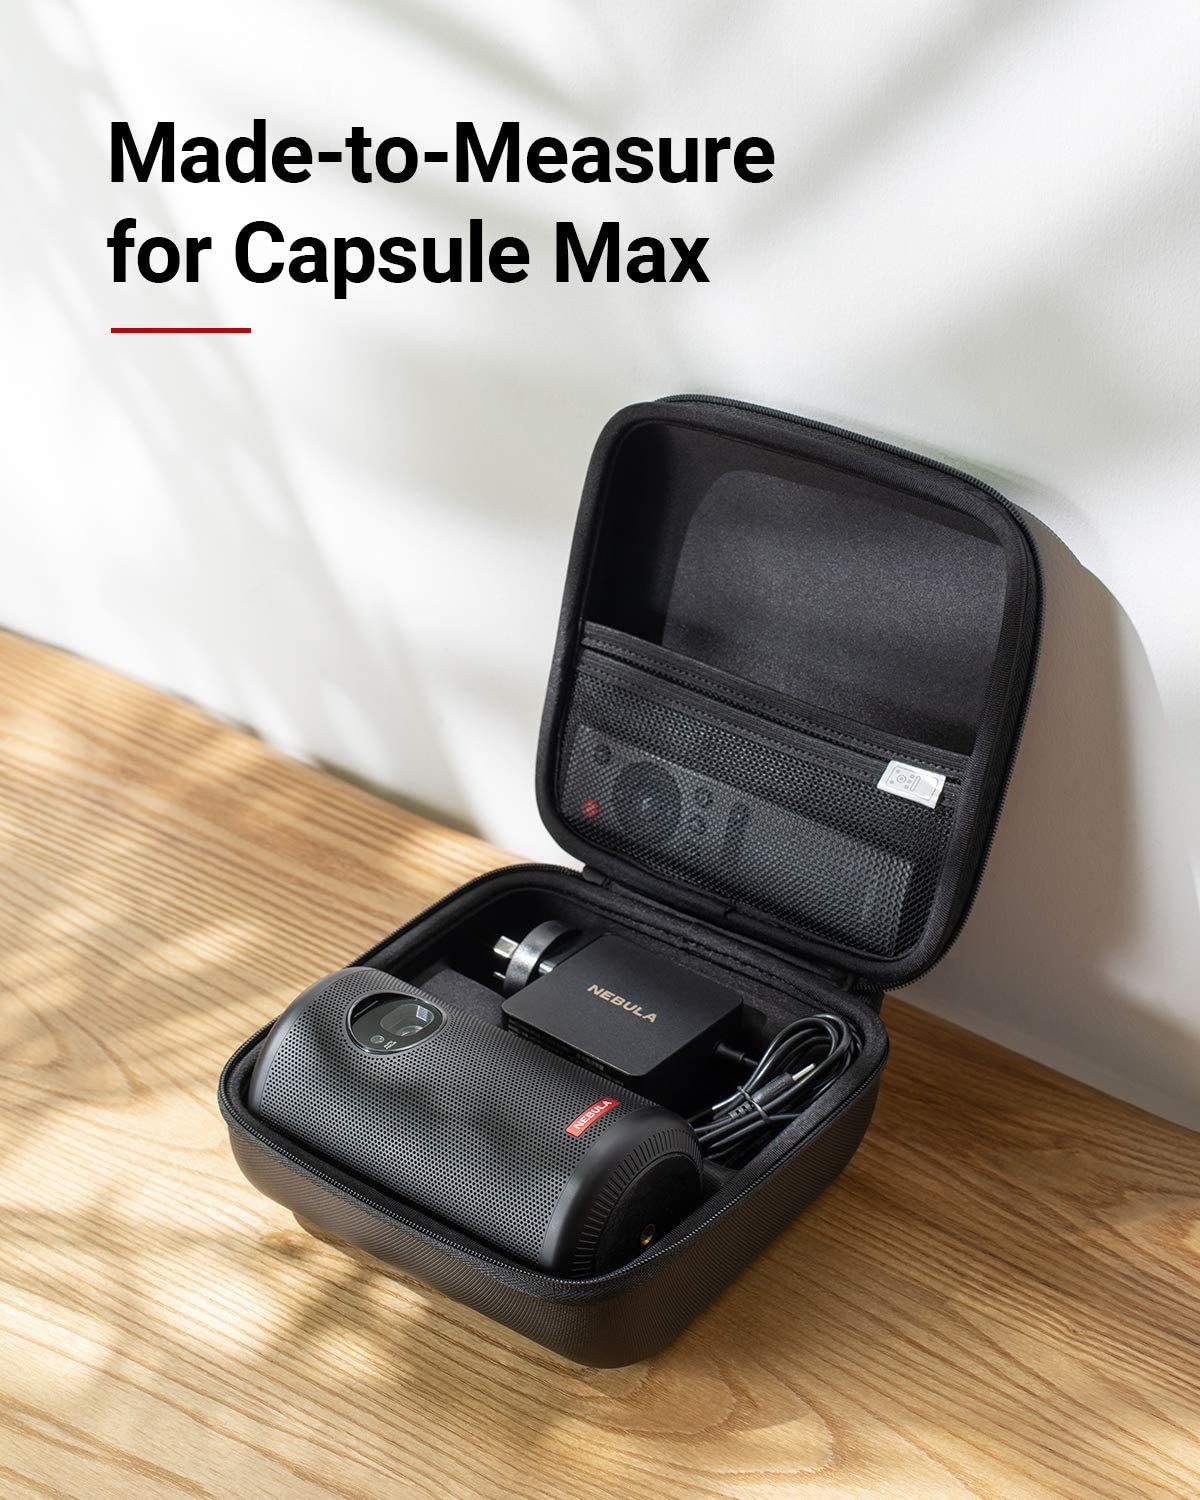 Capsule II &amp; Max Carry Case